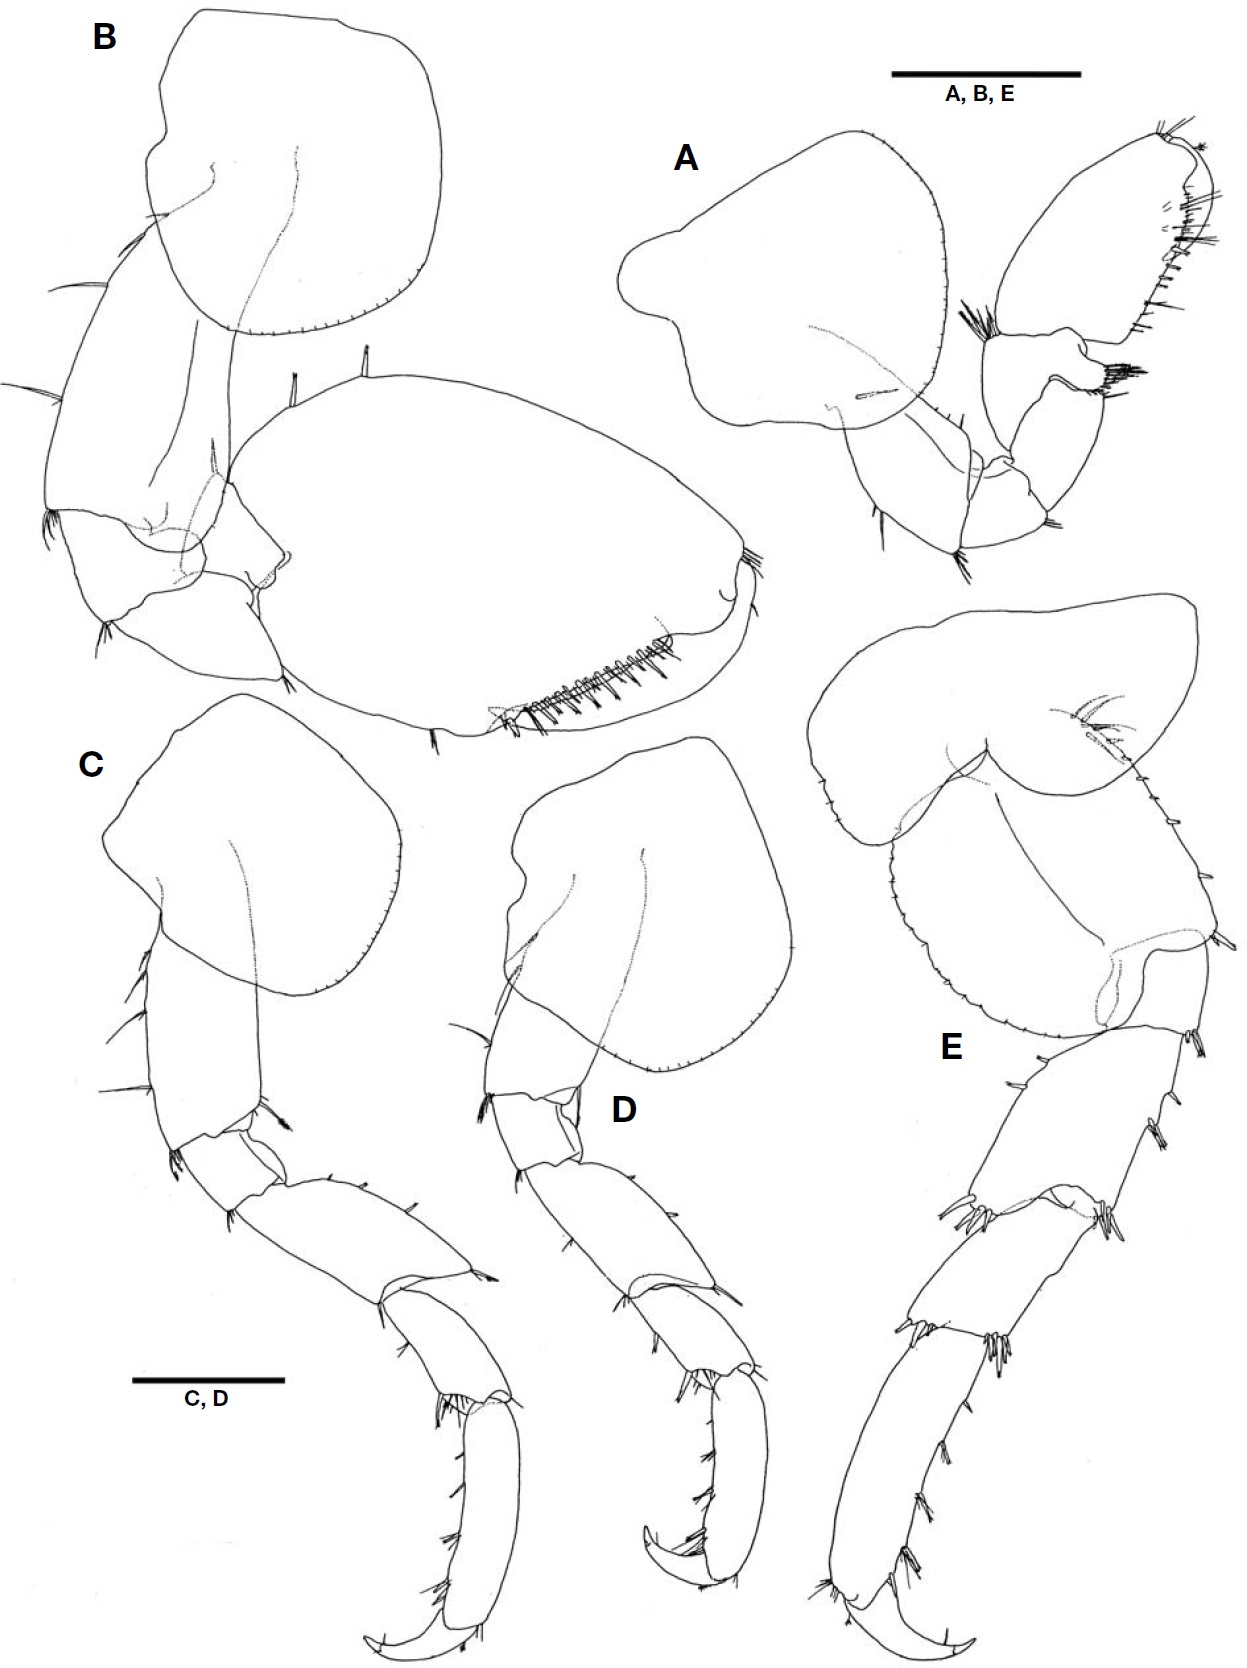 Protohyale (Boreohyale) triangulata (Hiwatari, 2003), male. A, Gnathopod 1; B, Gnathopod 2; C, Pereopod 3; D, Pereopod 4; E, Pereopod 5. Scale bars: A-E=0.5 mm.